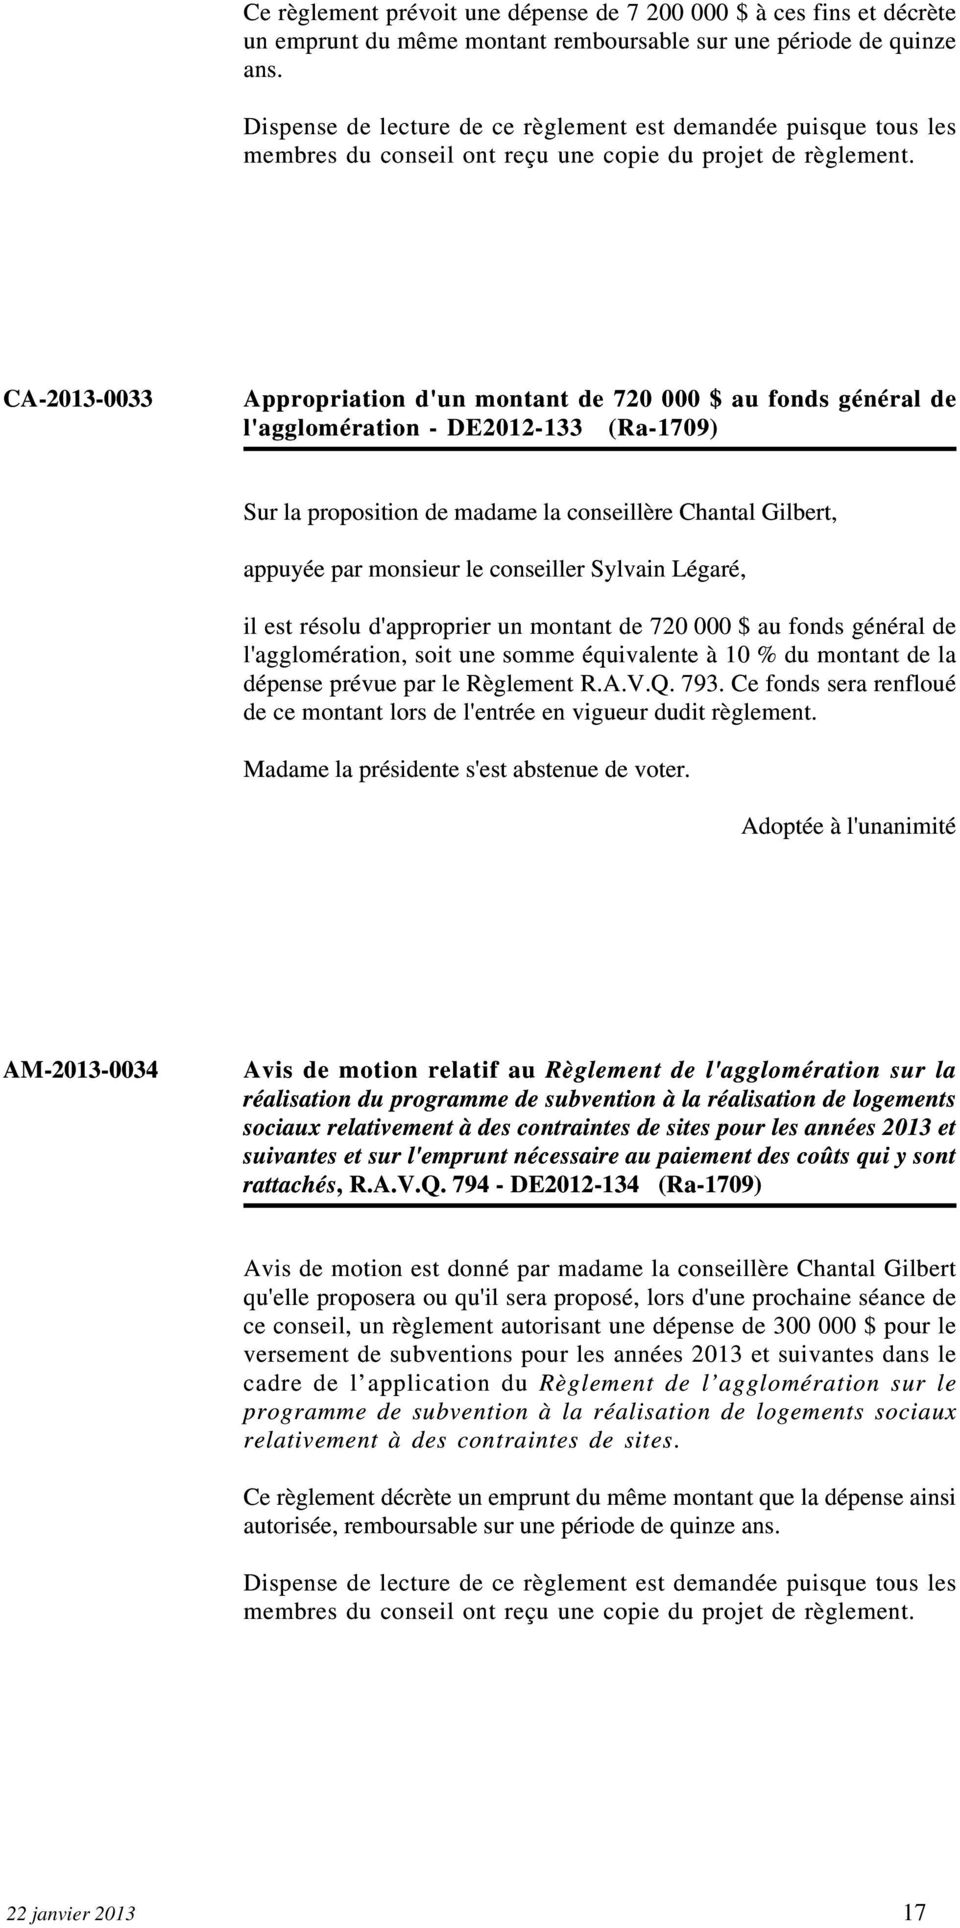 CA-2013-0033 Appropriation d'un montant de 720 000 $ au fonds général de l'agglomération - DE2012-133 (Ra-1709) Sur la proposition de madame la conseillère Chantal Gilbert, il est résolu d'approprier